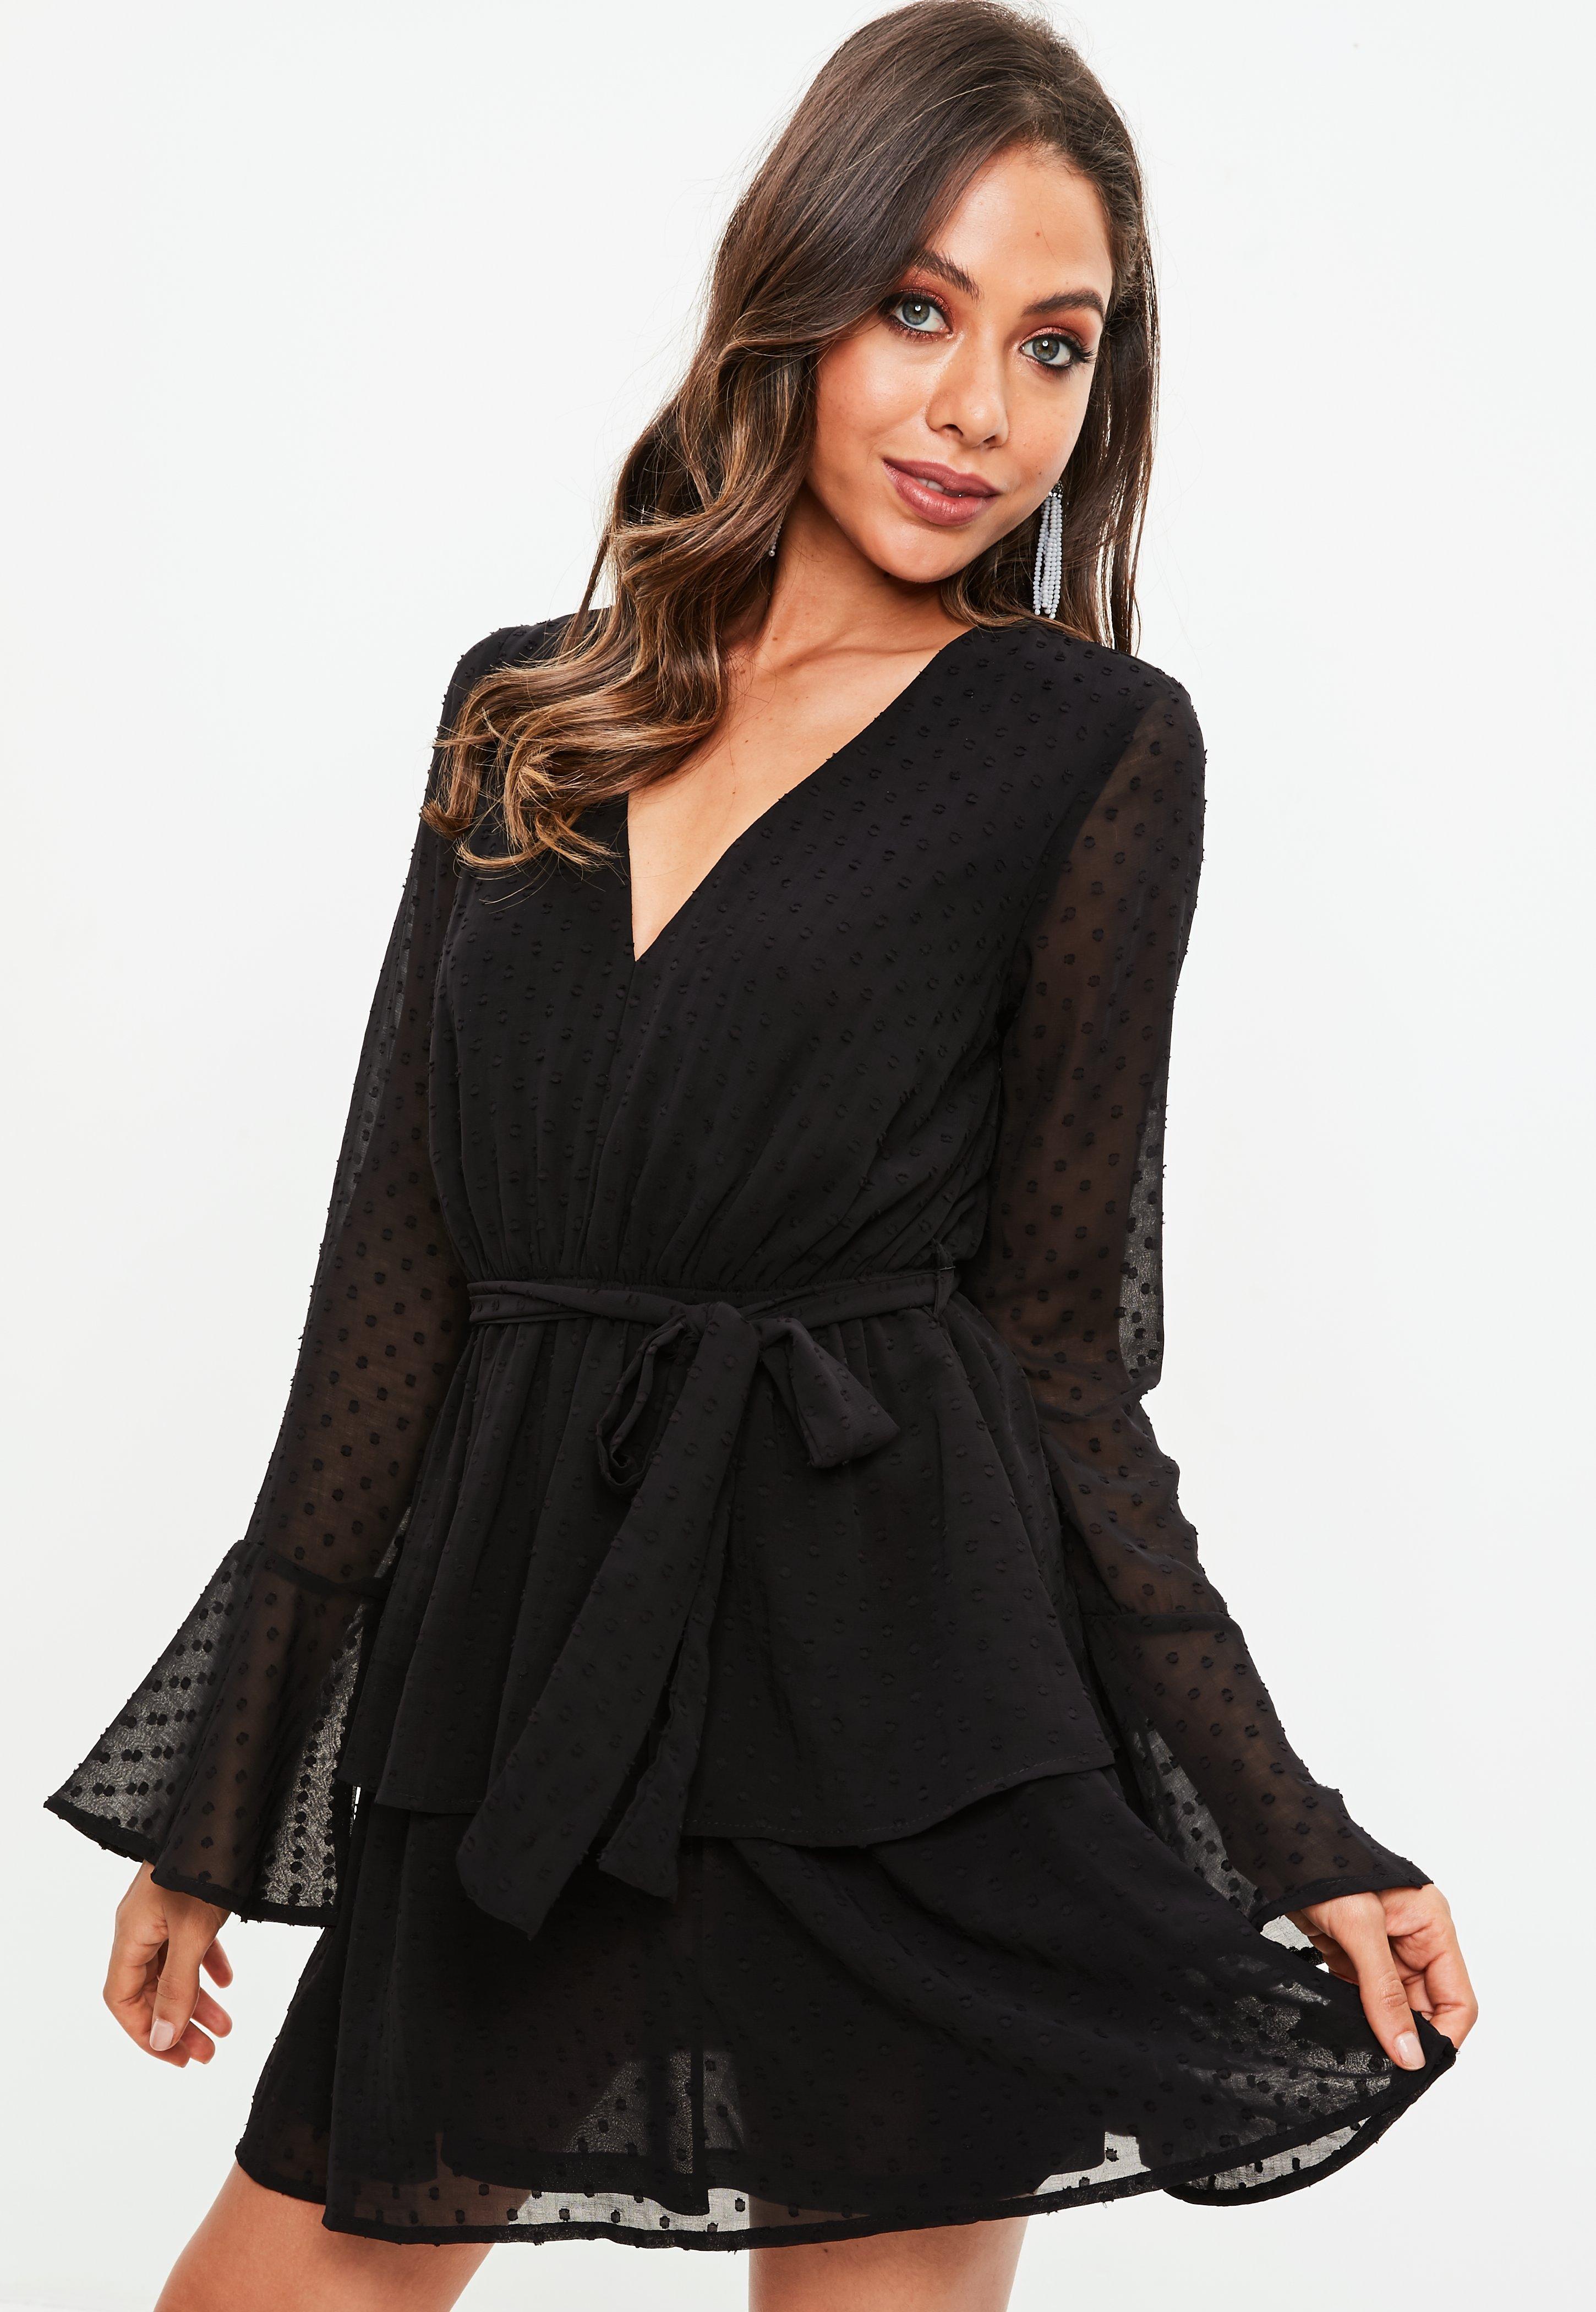 Buy > black dobby mesh dress > in stock